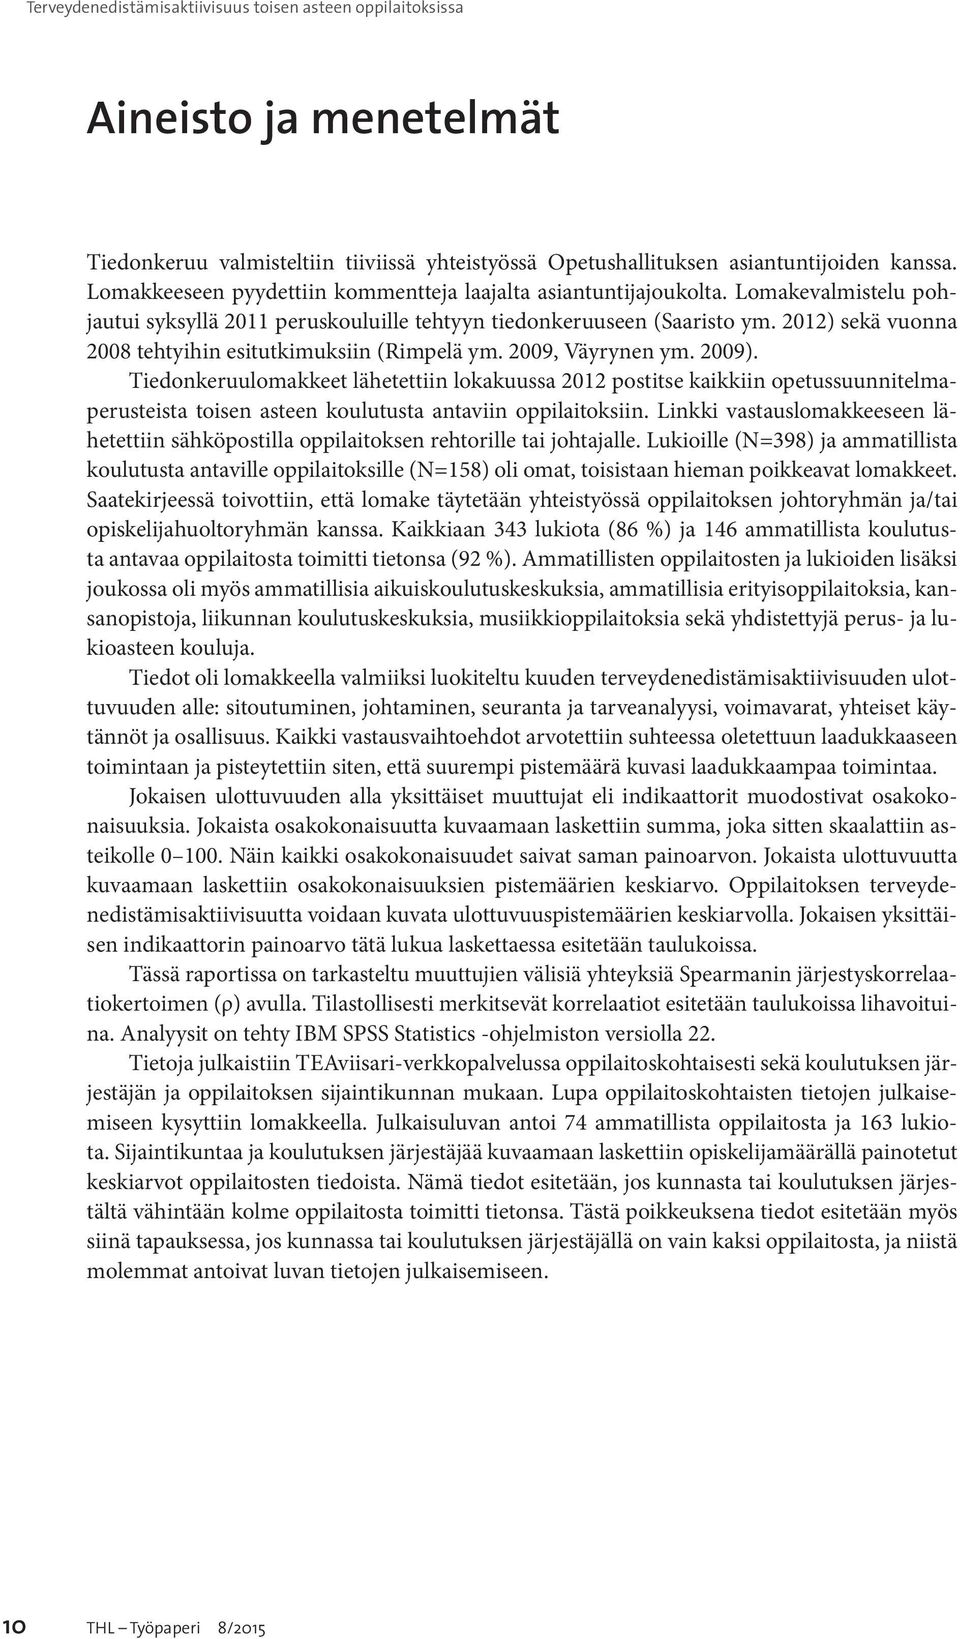 2012) sekä vuonna 2008 tehtyihin esitutkimuksiin (Rimpelä ym. 2009, Väyrynen ym. 2009).